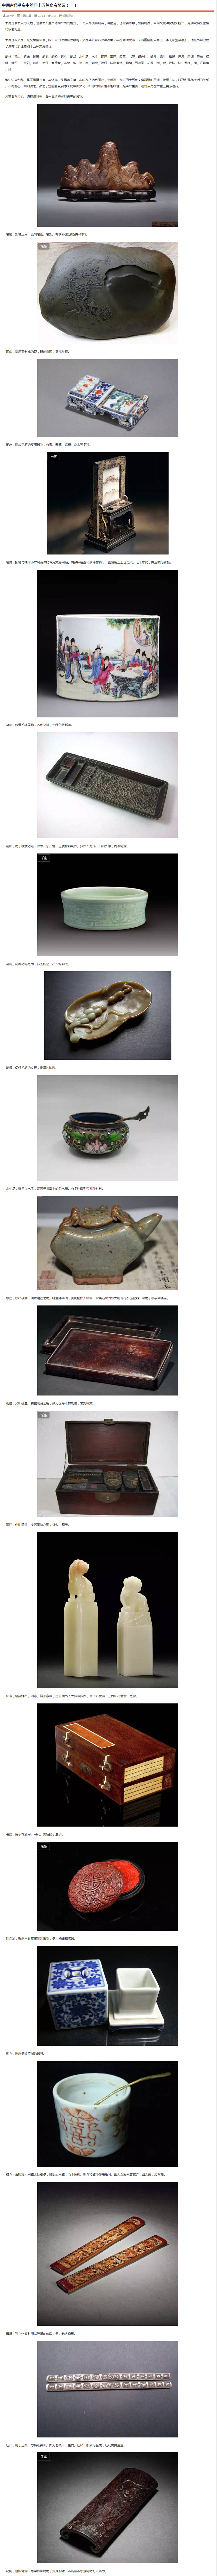 中国古代书房中的四十五种文房器玩（一）